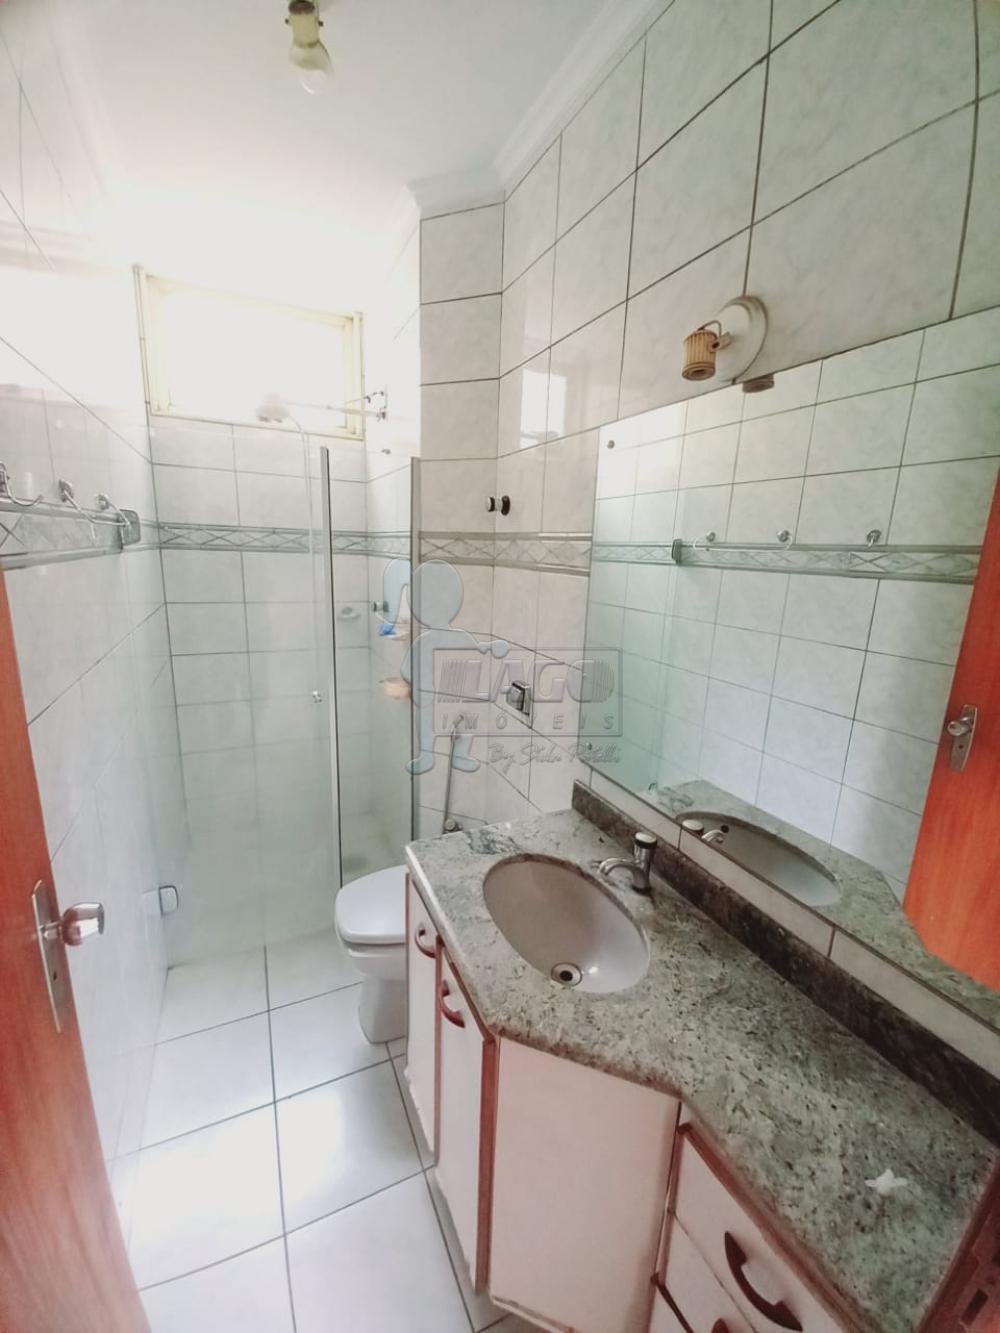 Comprar Apartamento / Padrão em Ribeirão Preto R$ 450.000,00 - Foto 9